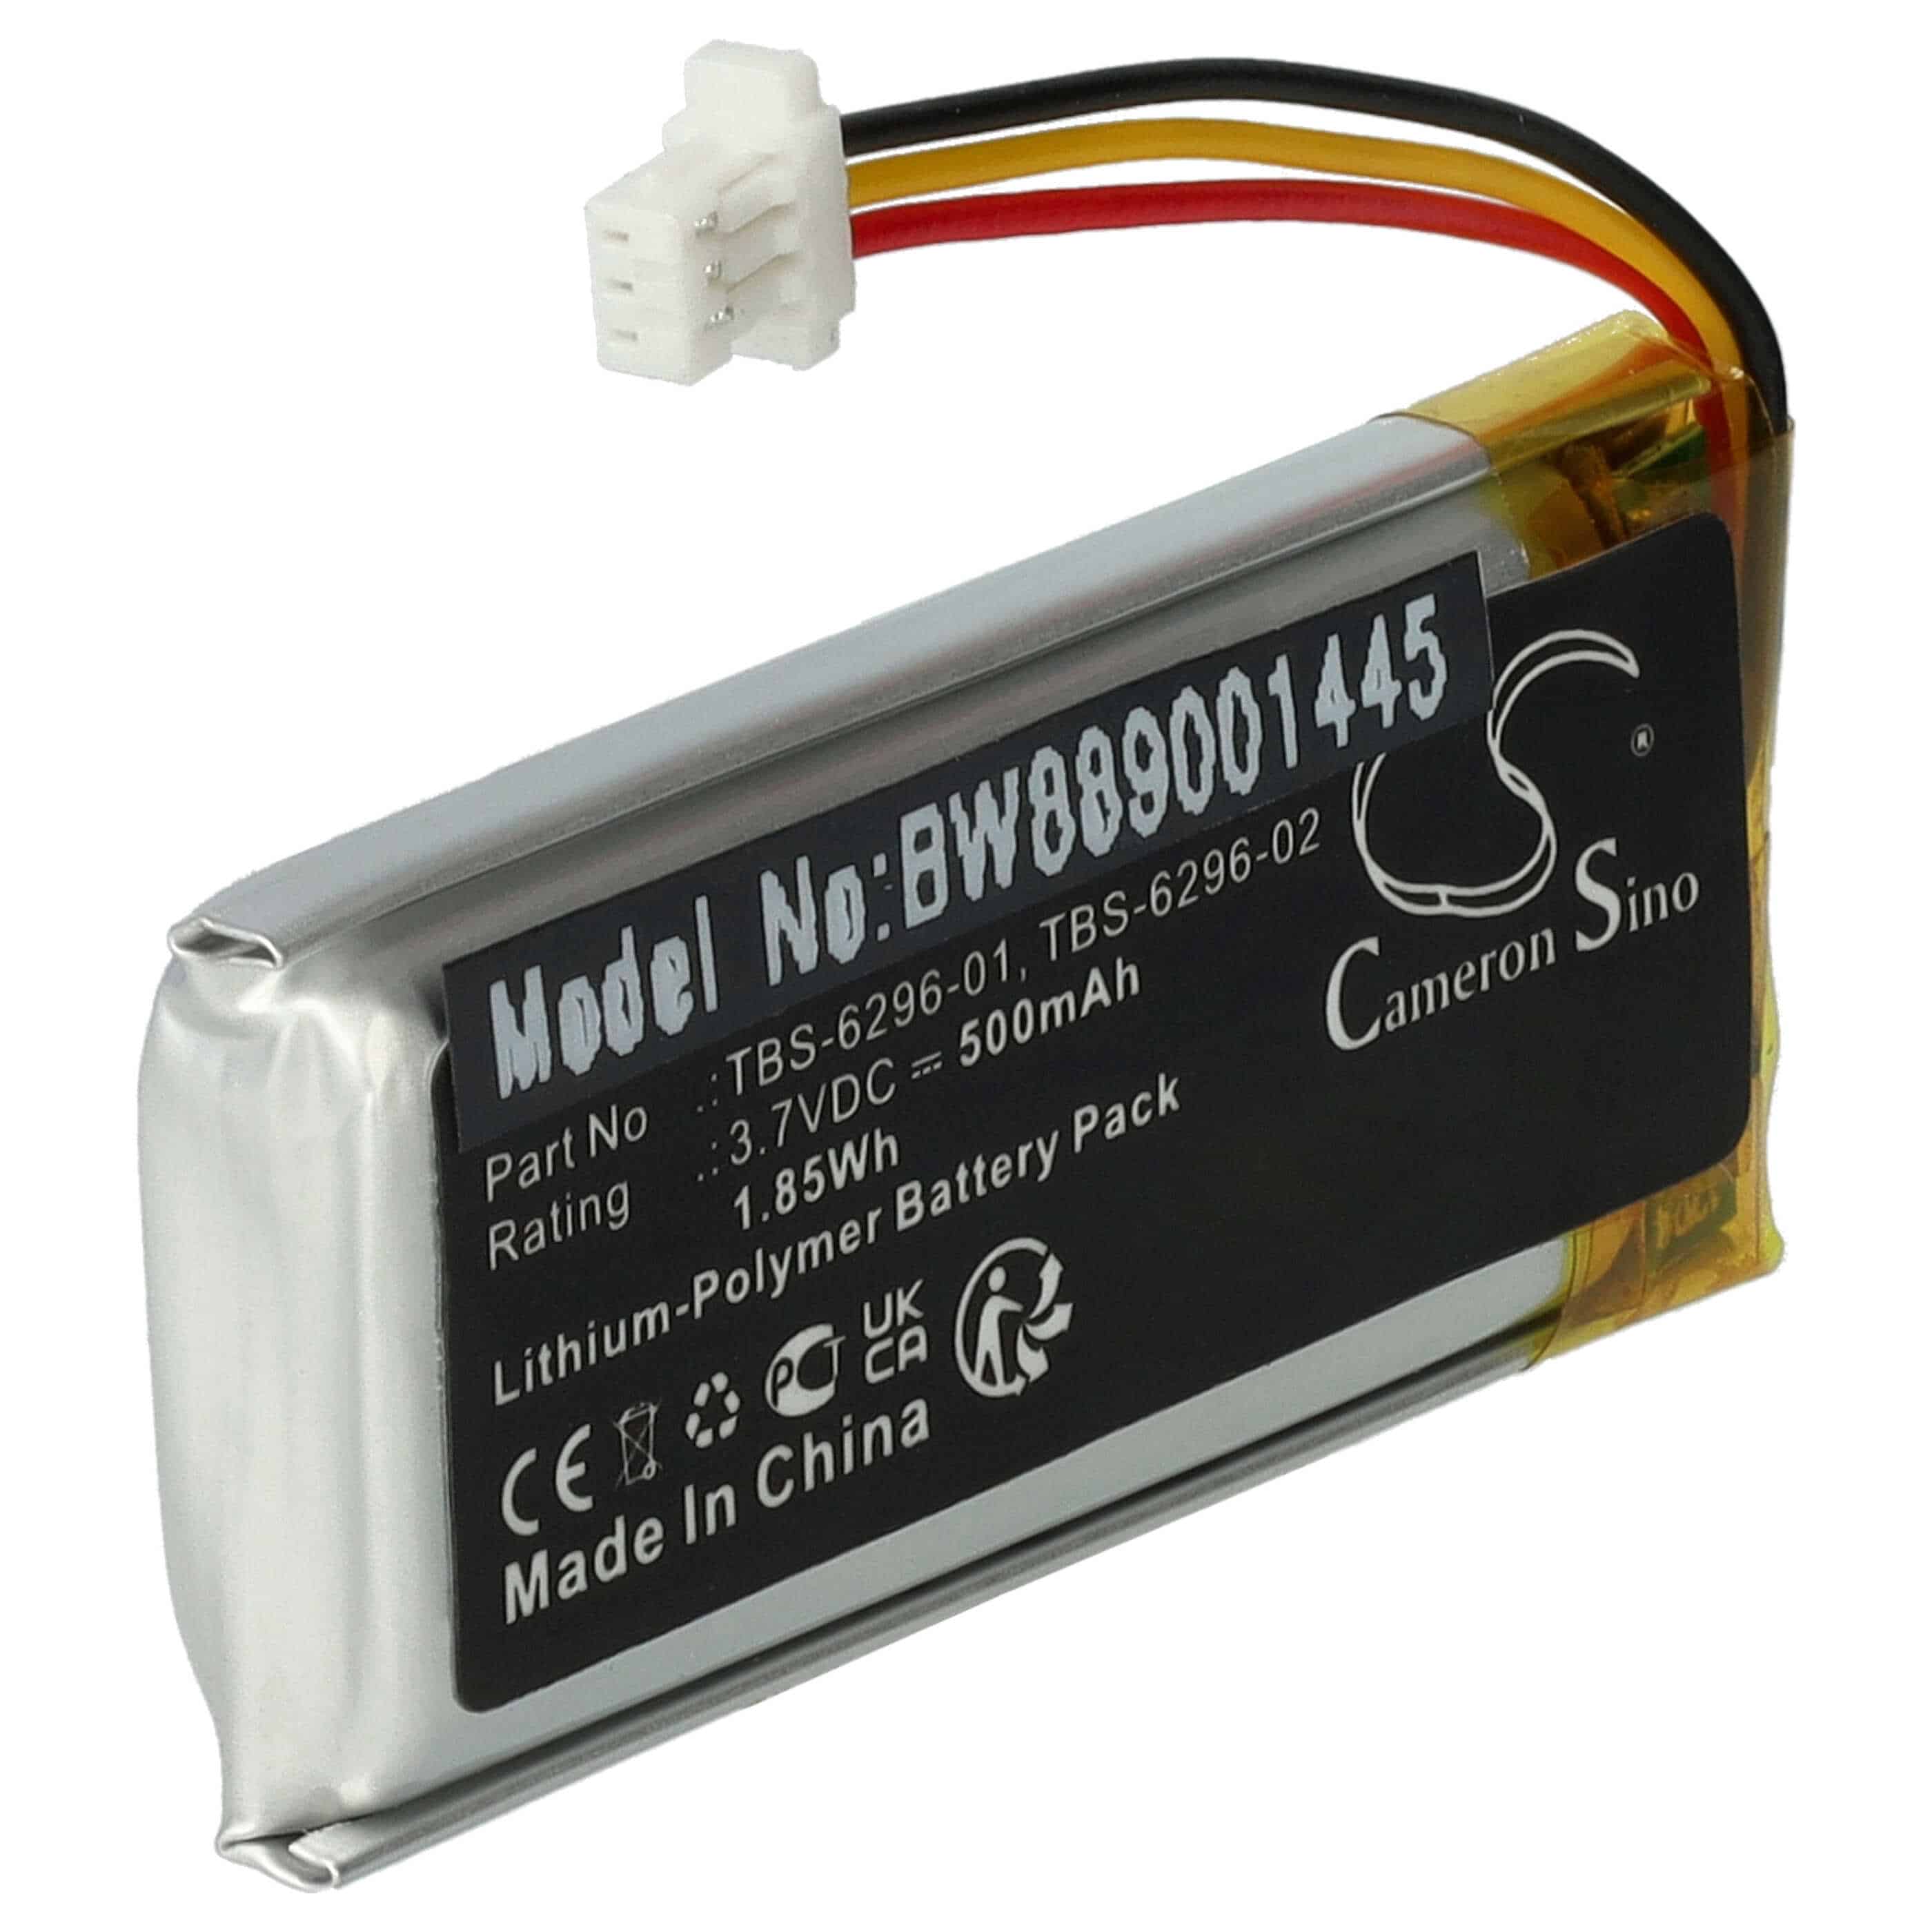 Batterie remplace Turtle Beach TBS-6296-01, TBS-6296-02 pour casque audio - 500mAh 3,7V Li-polymère